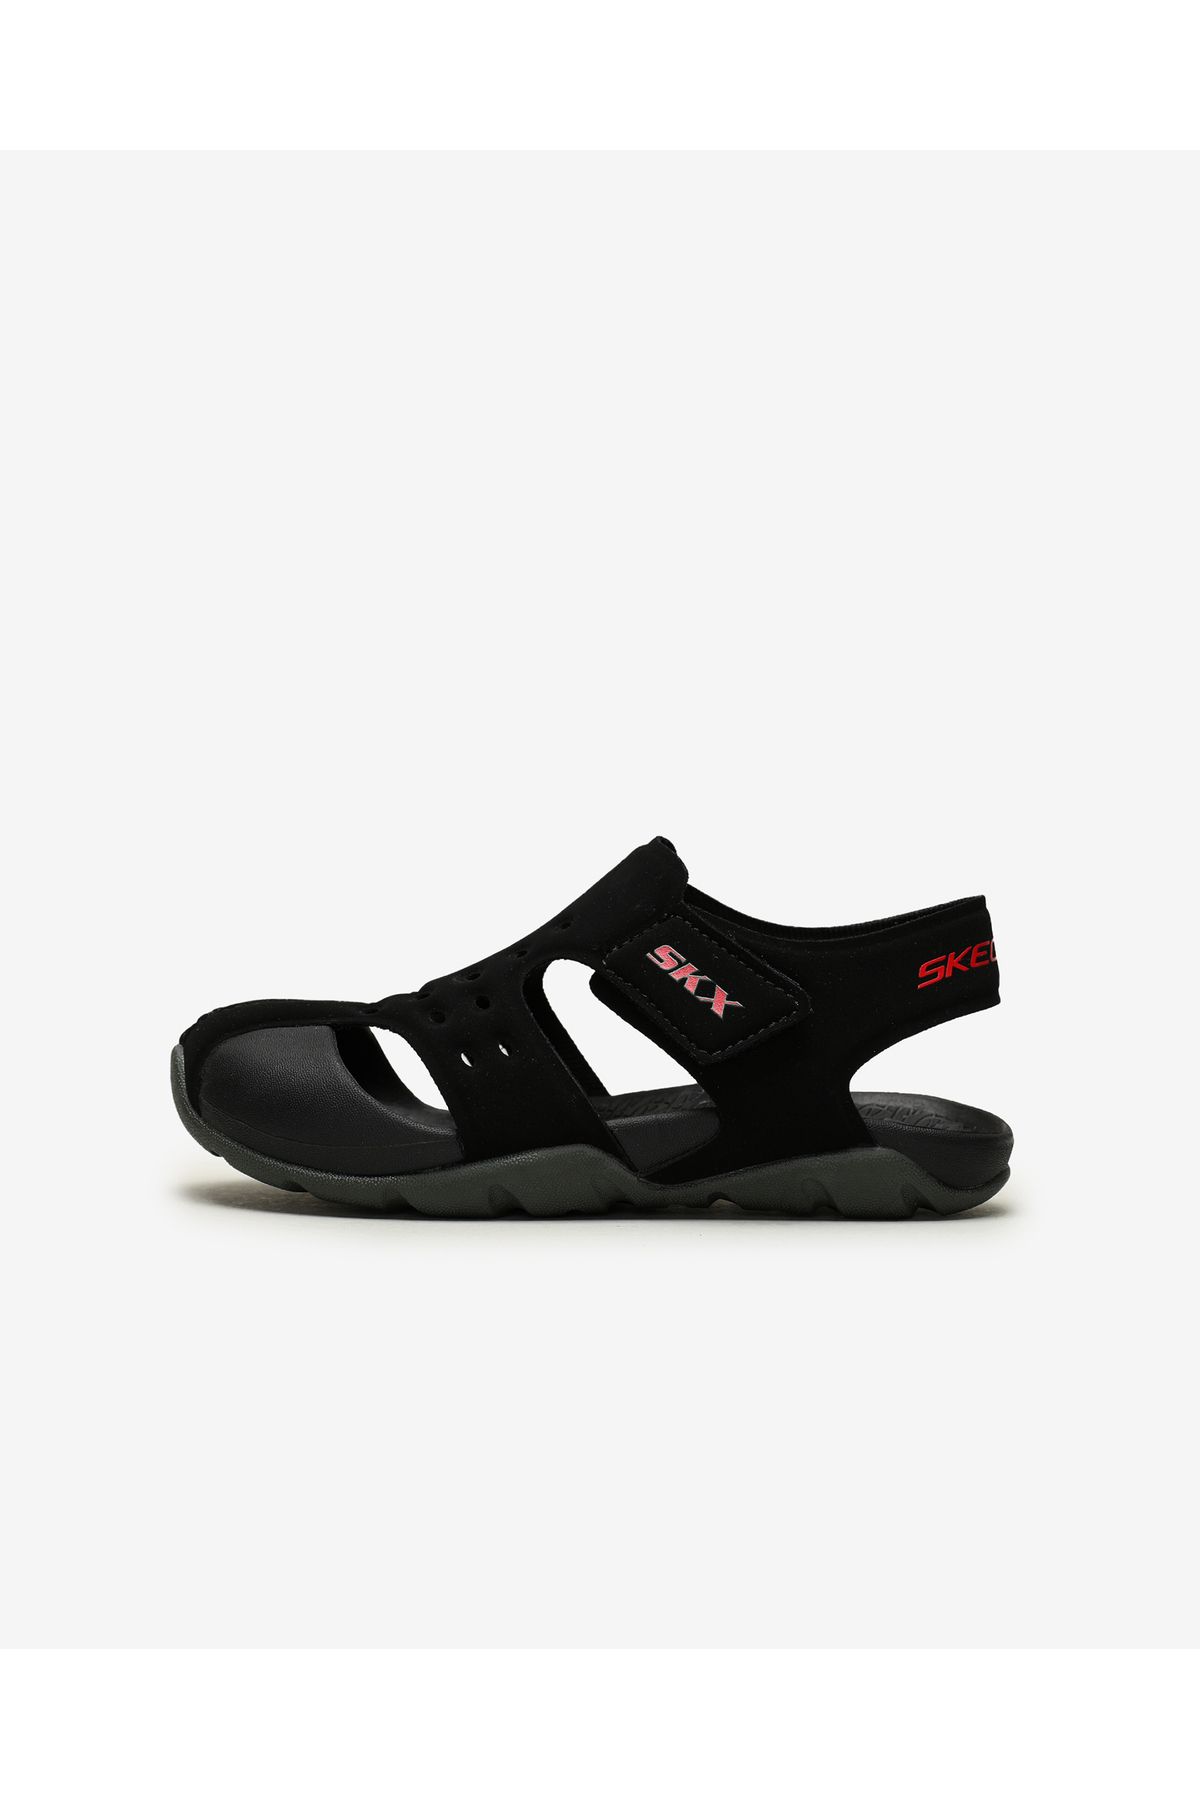 Skechers Side Wave Büyük Erkek Çocuk Siyah Sandalet 92330l Bkcc